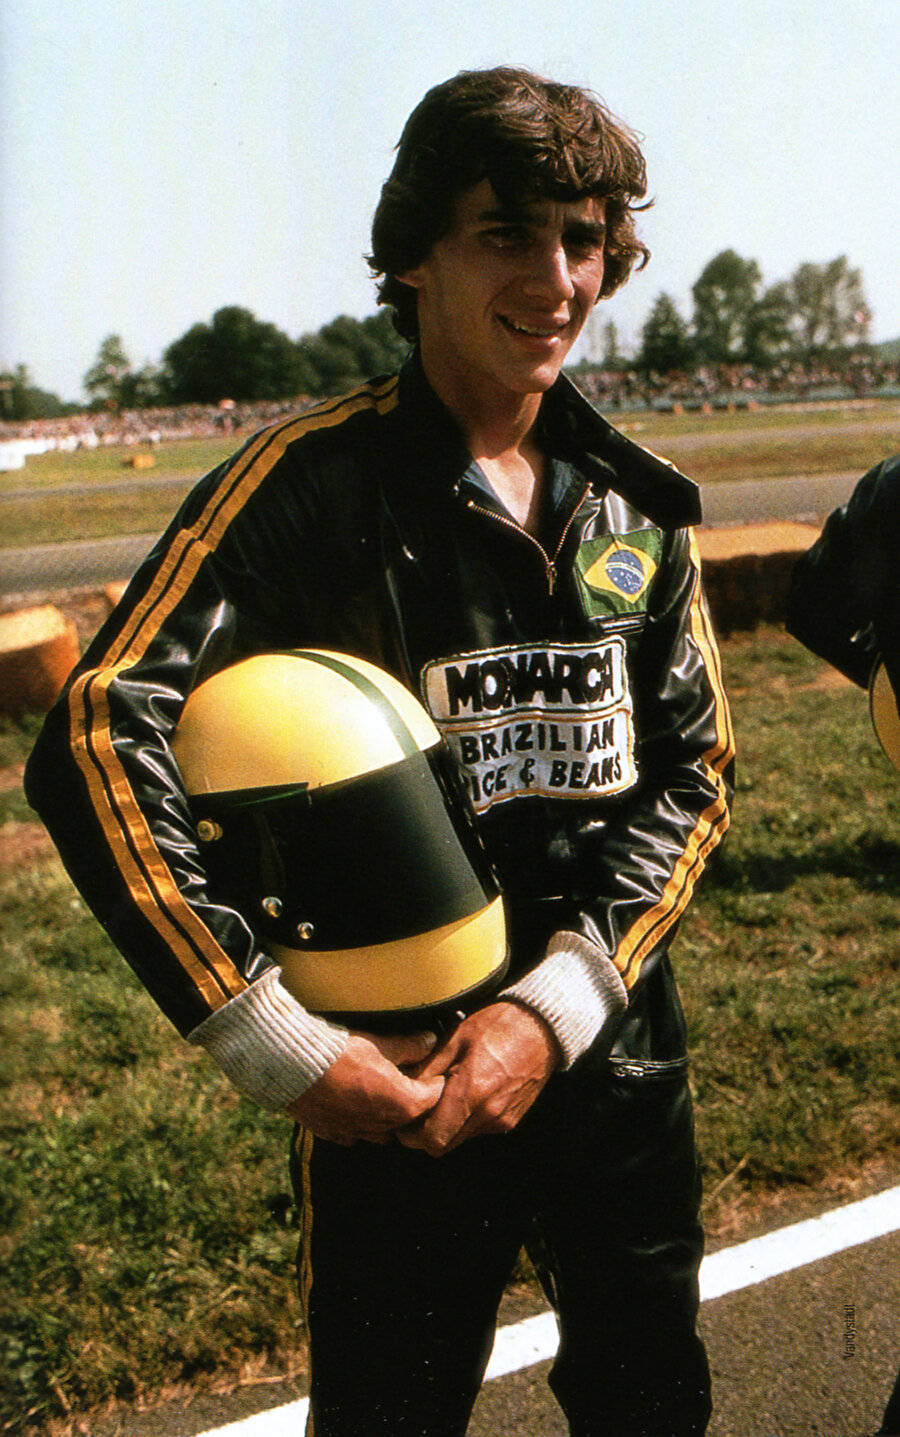 Fittipaldi’yi kendisine rakip olarak belirledikten sonra yarışlara katılmaya başladı.
